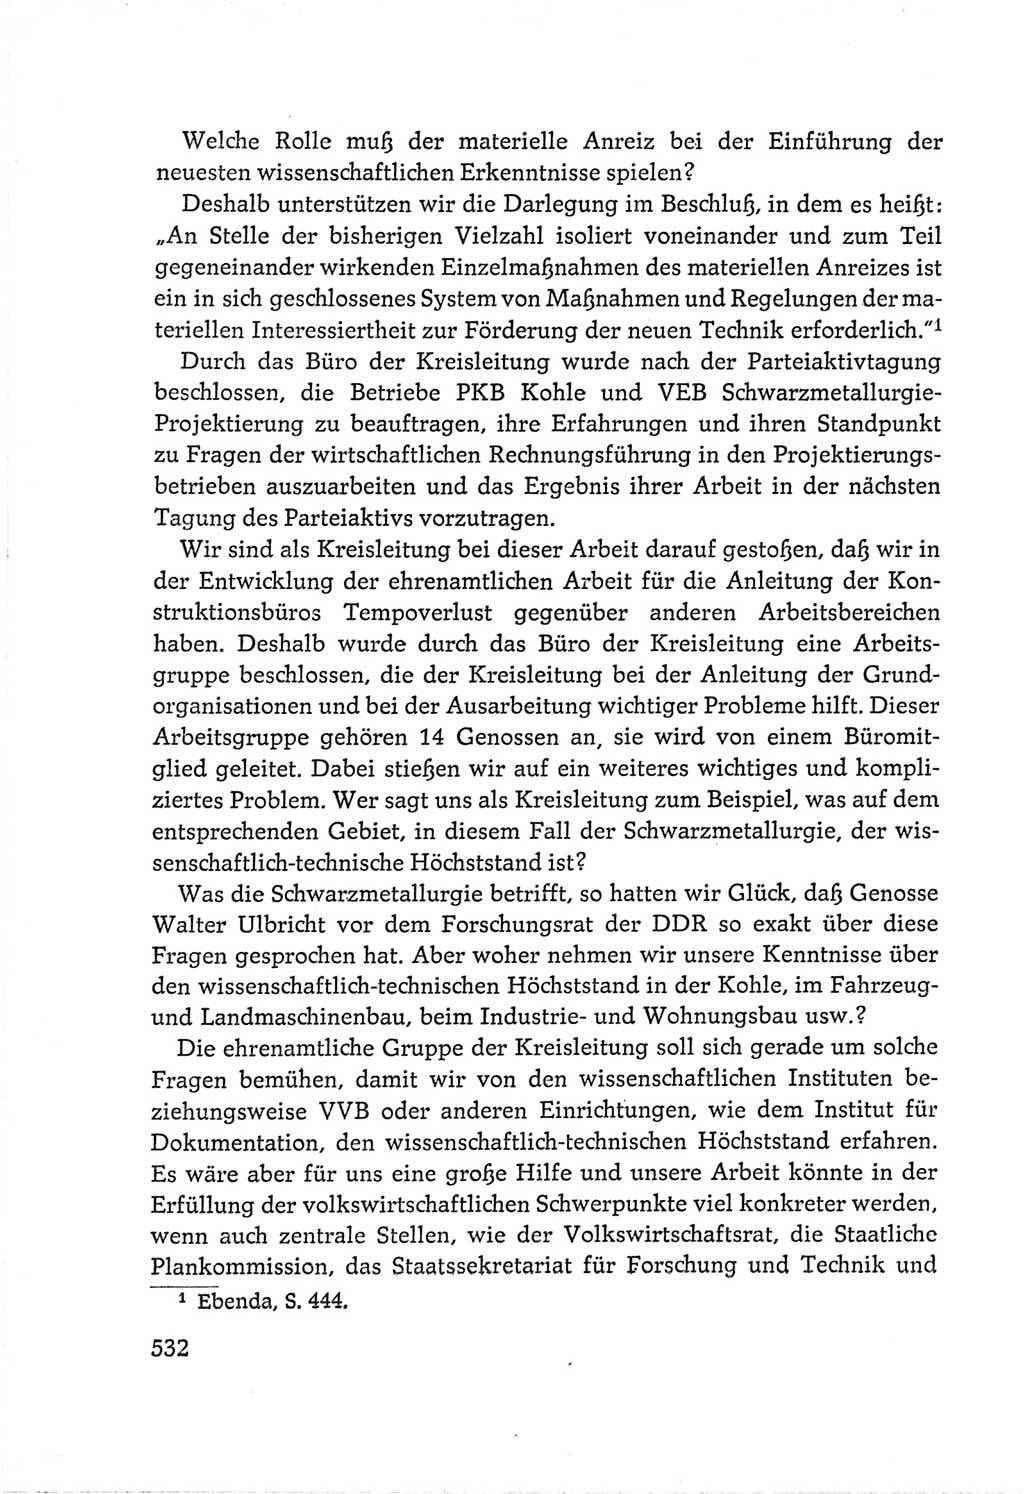 Protokoll der Verhandlungen des Ⅵ. Parteitages der Sozialistischen Einheitspartei Deutschlands (SED) [Deutsche Demokratische Republik (DDR)] 1963, Band Ⅲ, Seite 532 (Prot. Verh. Ⅵ. PT SED DDR 1963, Bd. Ⅲ, S. 532)